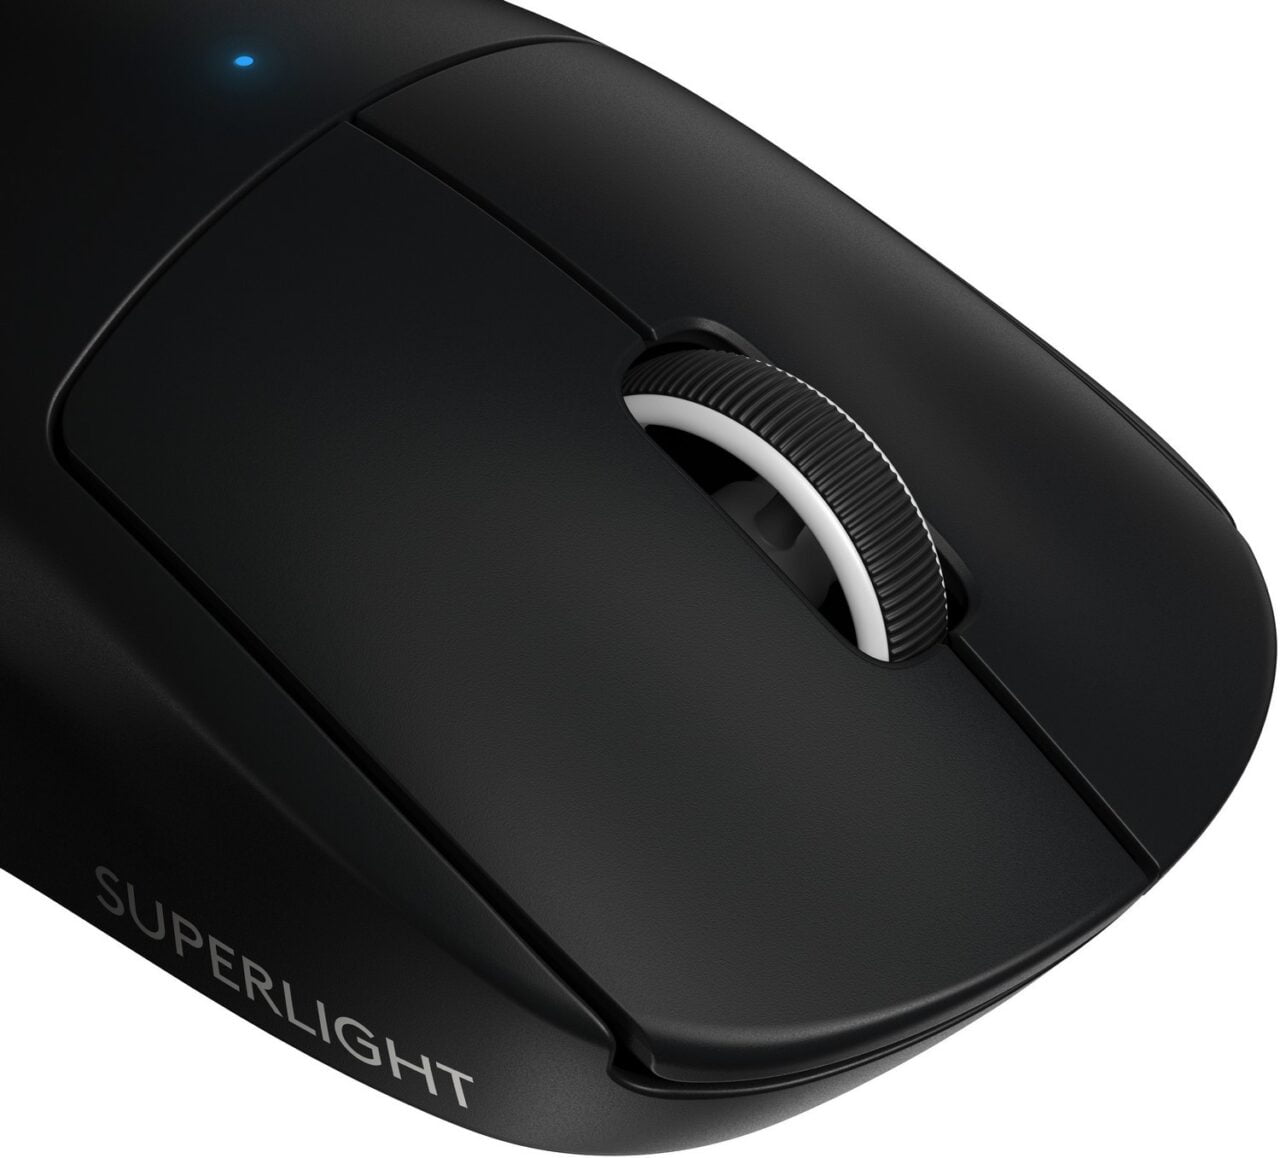 Czarna, bezprzewodowa mysz komputerowa z pokrętłem przewijania i niebieską diodą LED, z napisem "SUPERLIGHT" po lewej stronie.